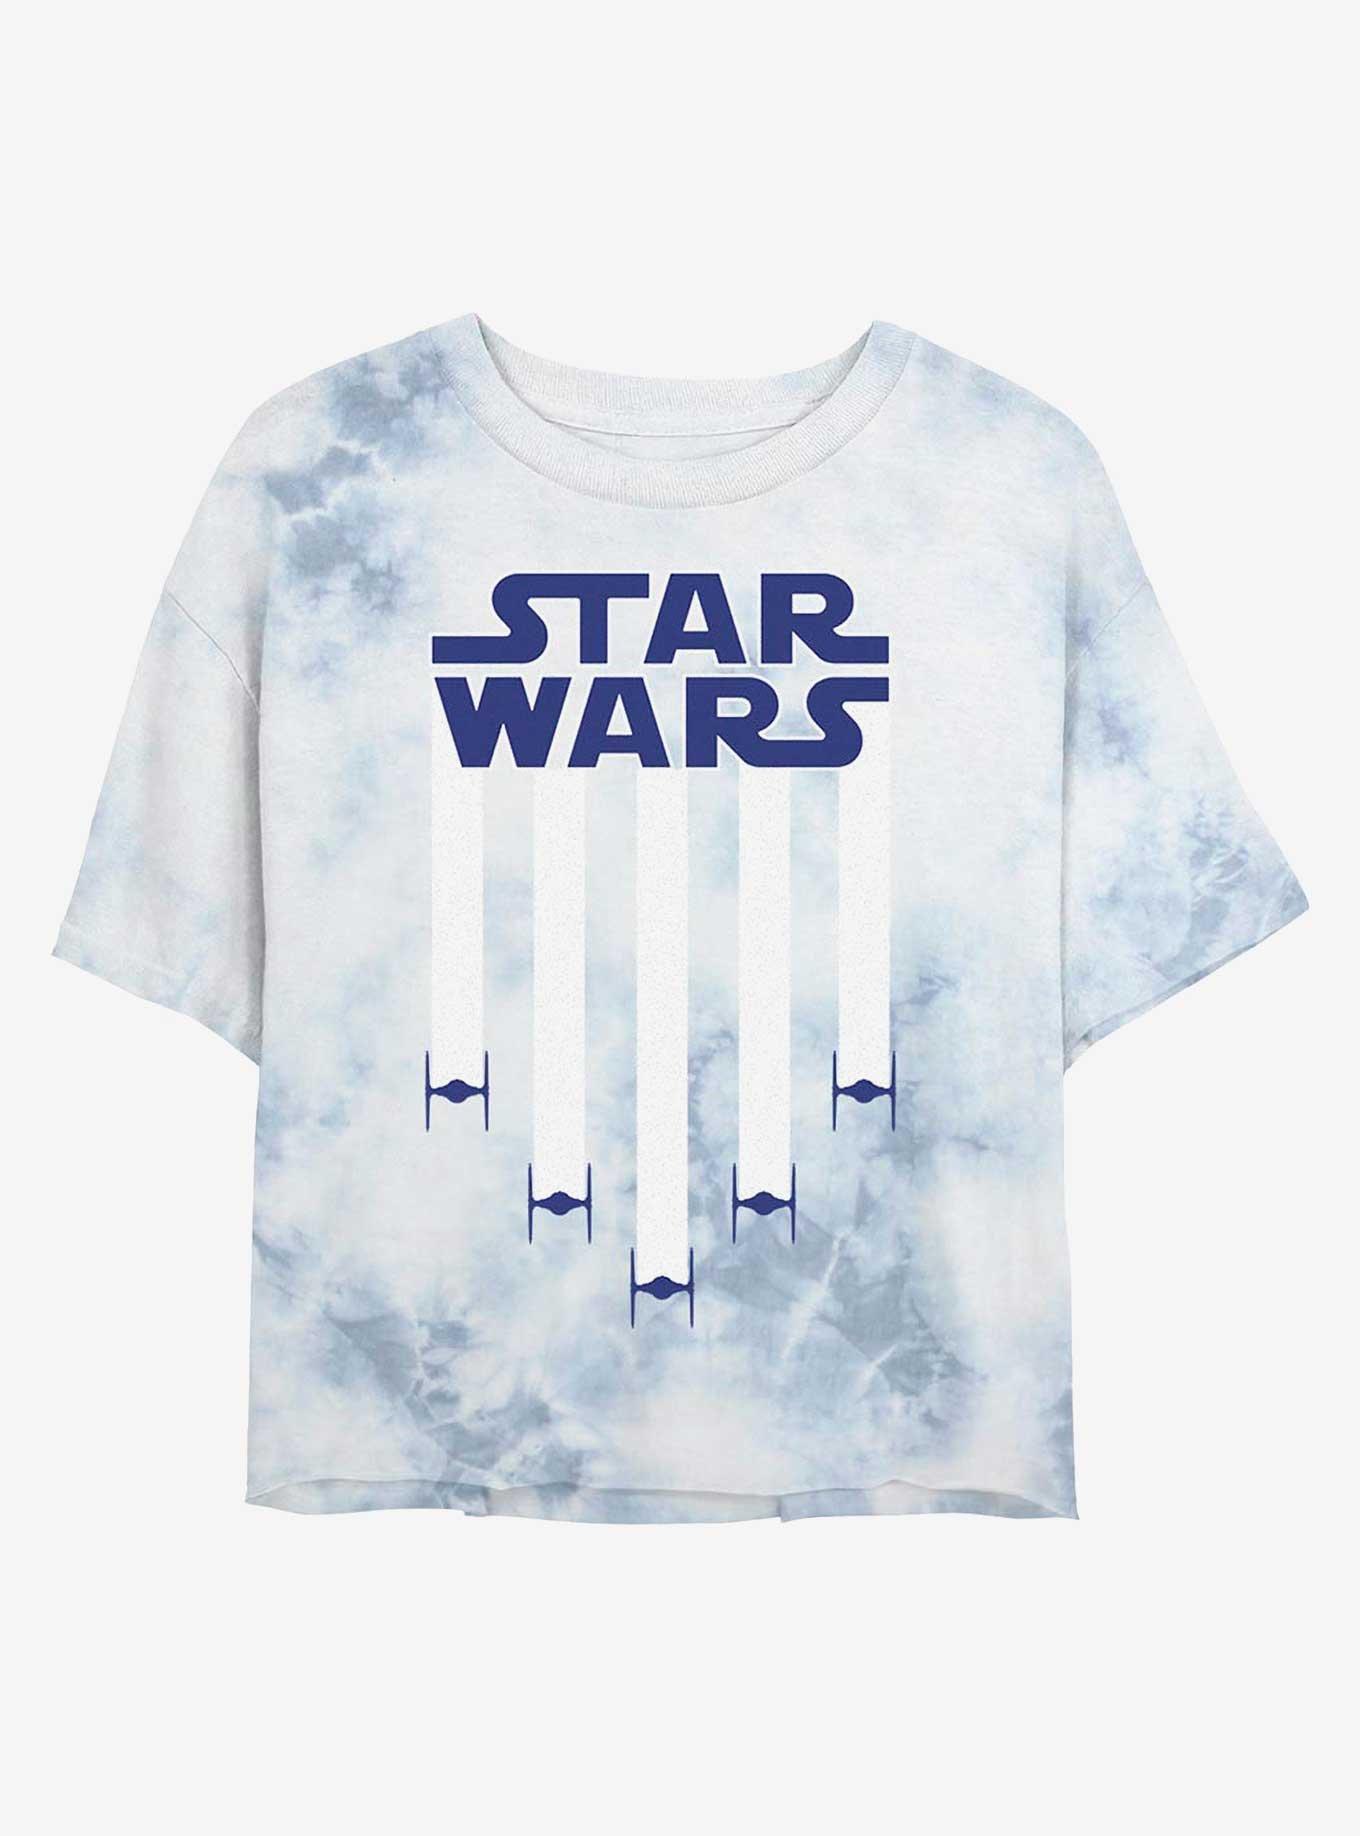 Star Wars Star Banner Tie-Dye Girls Crop T-Shirt, WHITEBLUE, hi-res